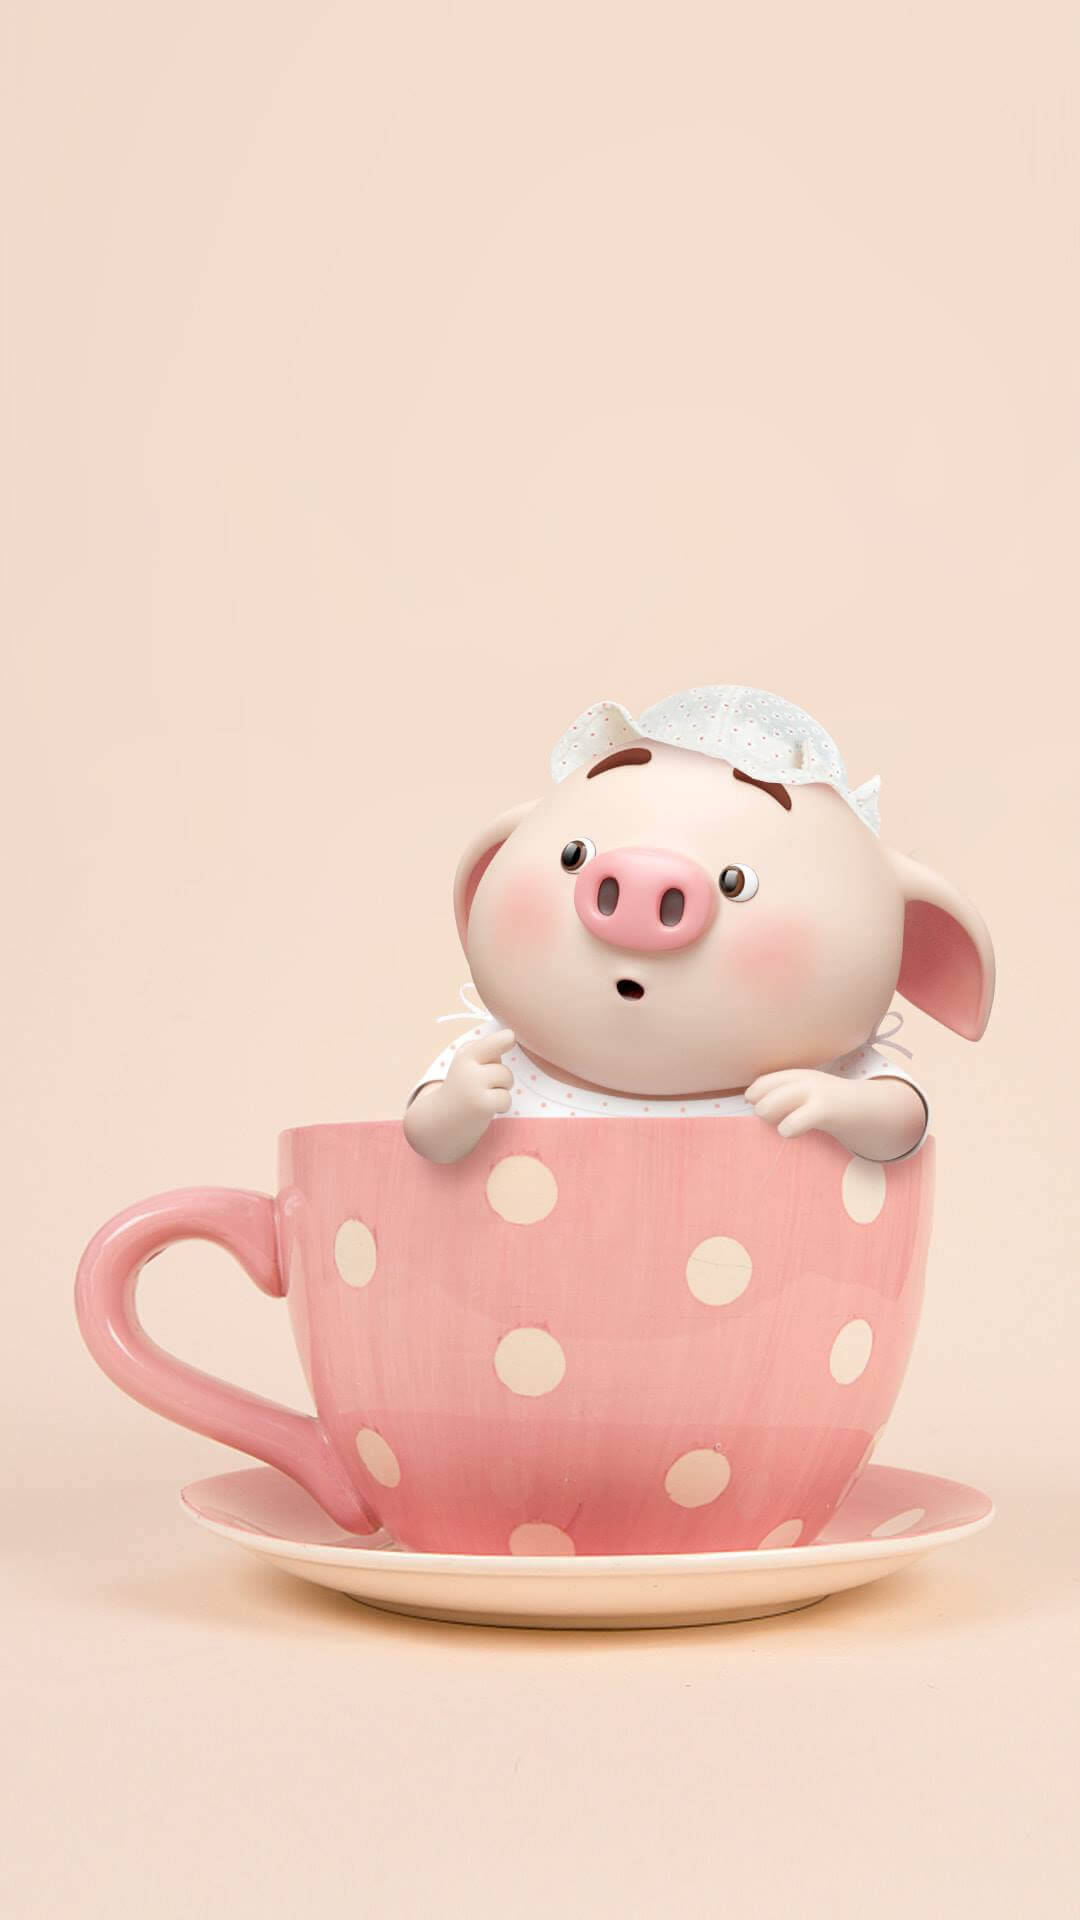 Mr Piggy In A Teacup Wallpaper